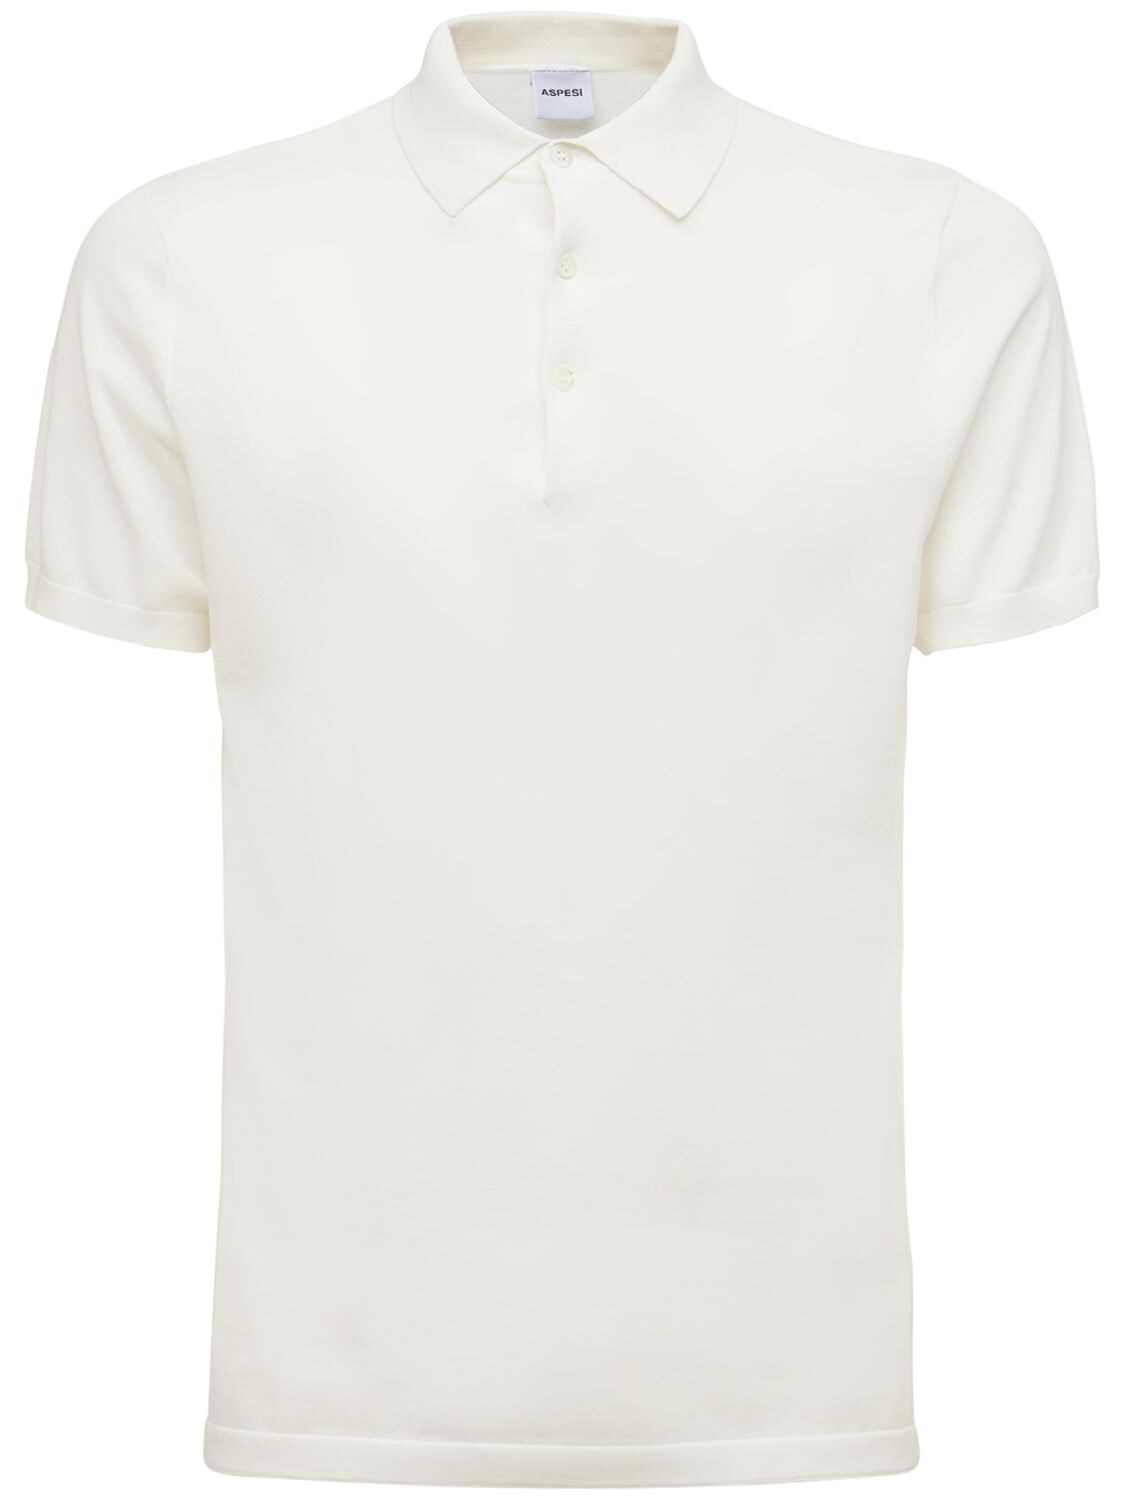 Aspesi Cotton Polo Shirt In White